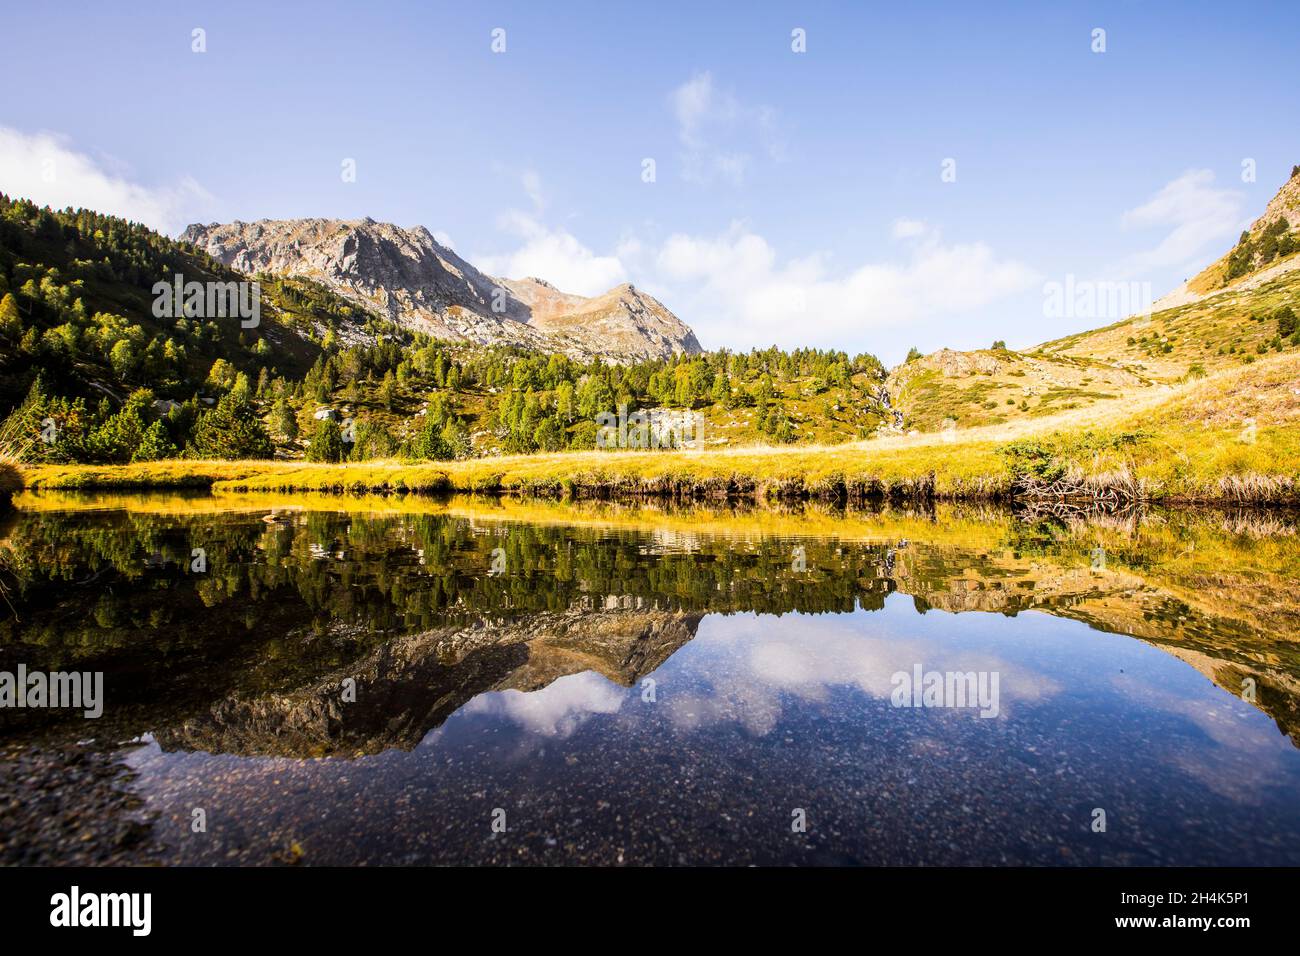 Lac alpin et paysage de montagne, vallée de Campcardos, la Cerdanya, Pyrénées, France Banque D'Images